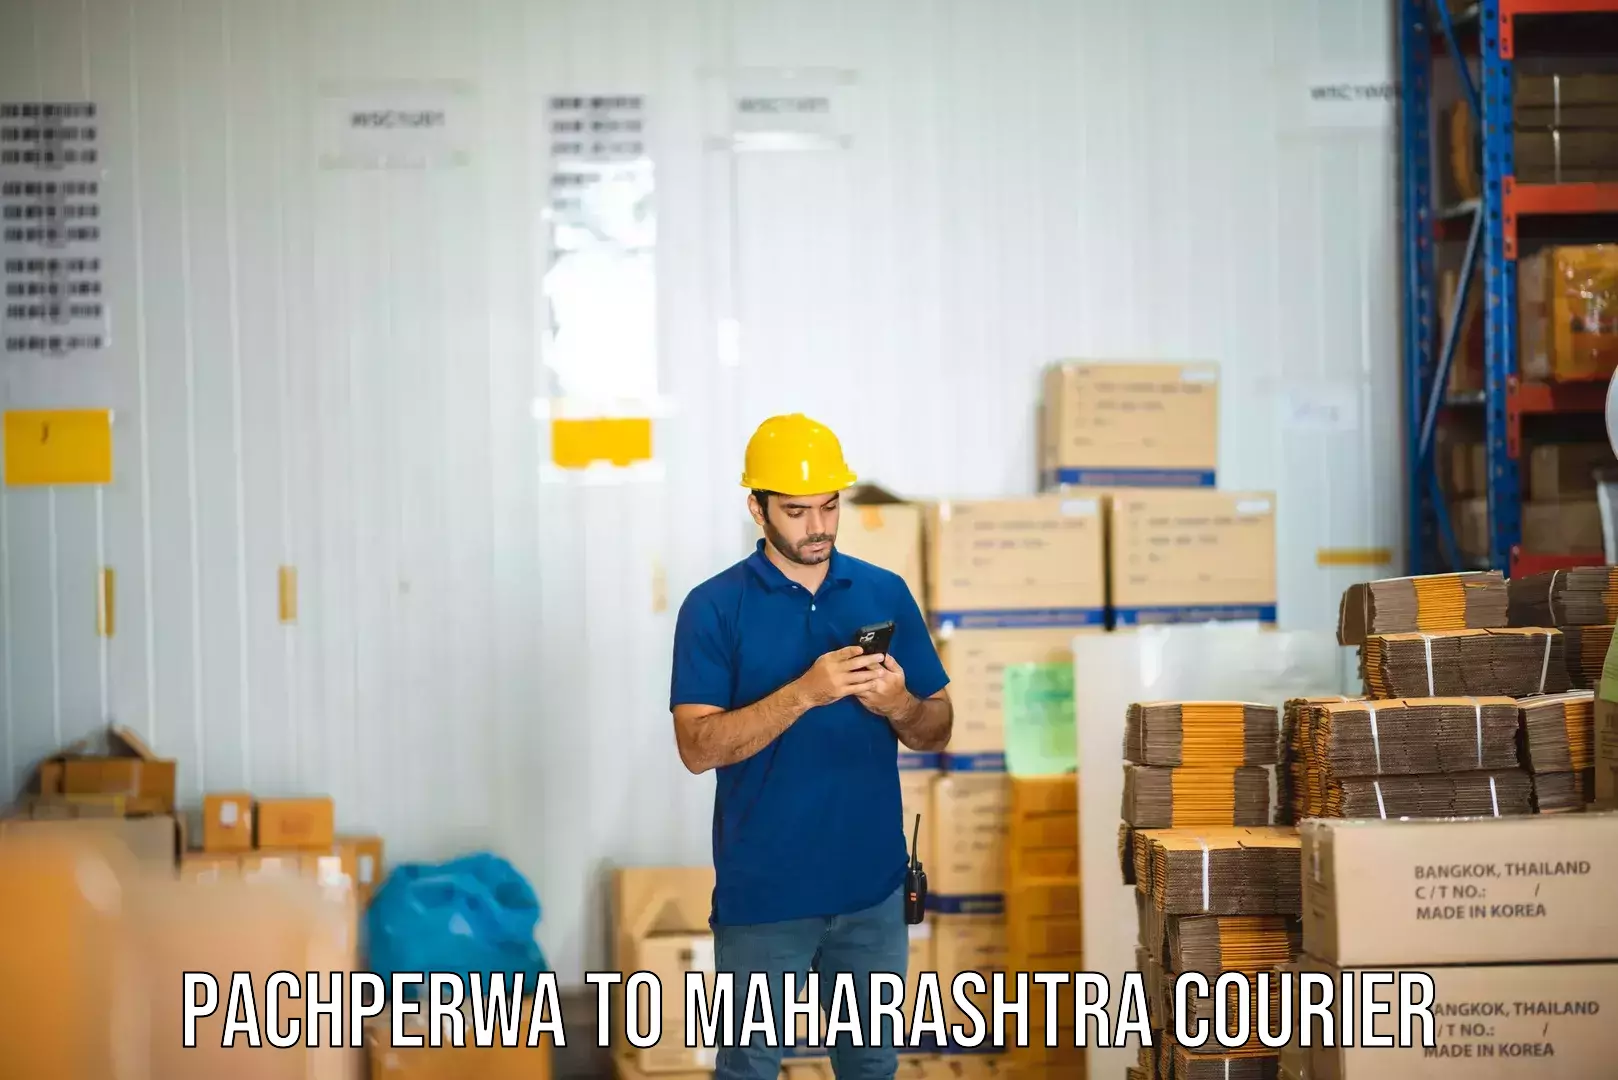 Nationwide shipping capabilities Pachperwa to Maharashtra